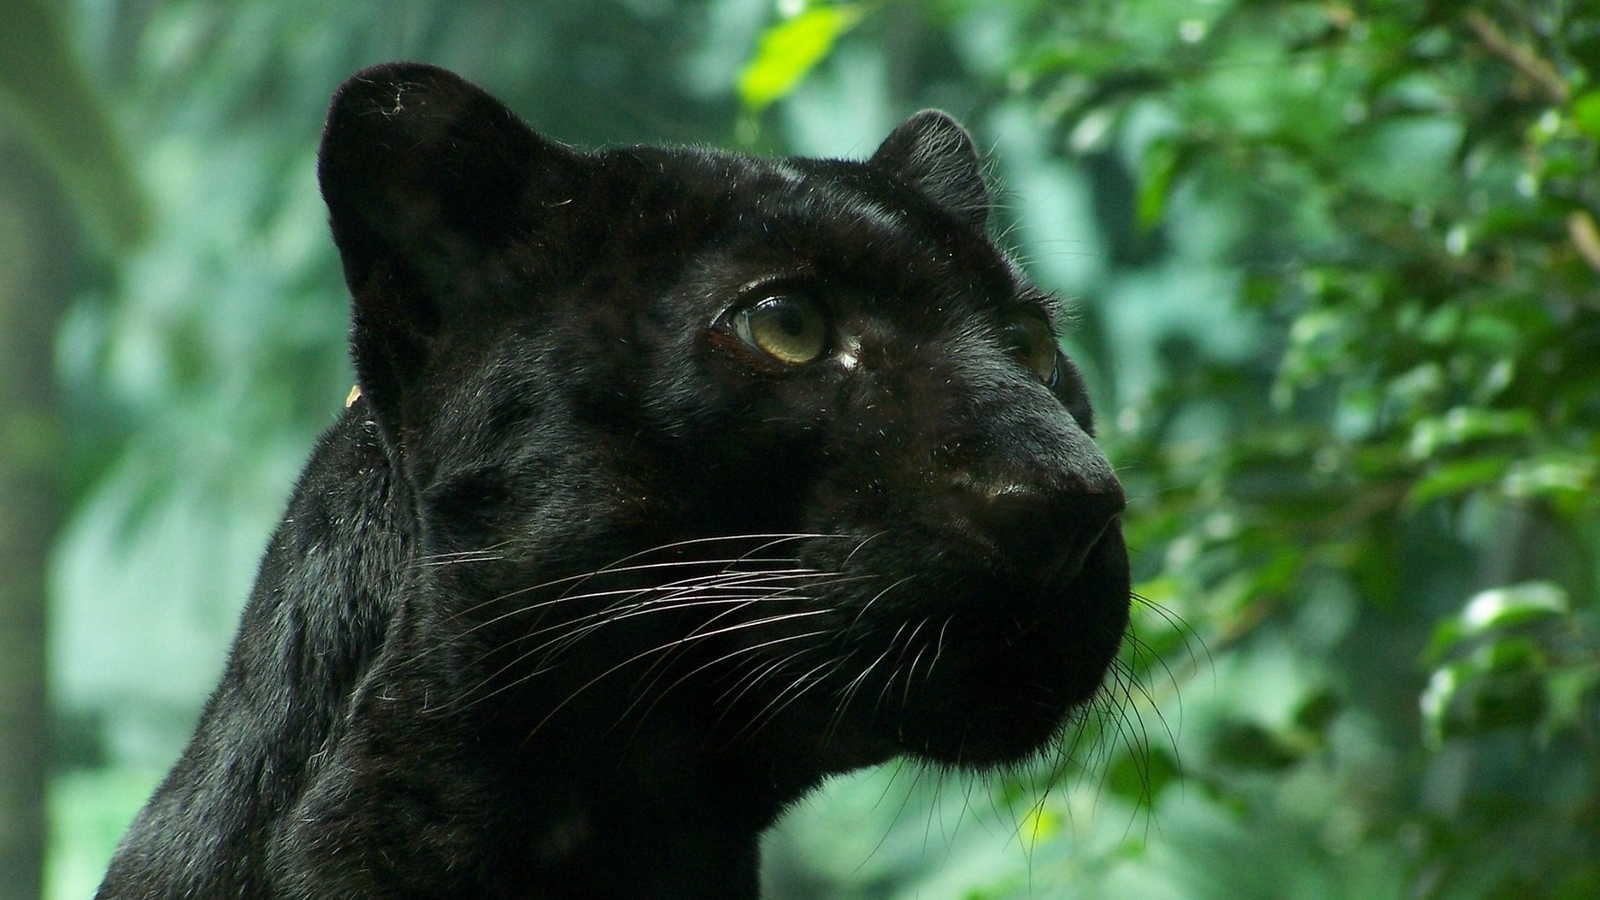 Wallpaper Black Panther, Wildcat, Foliage - Black Panther Animal Hd - HD Wallpaper 